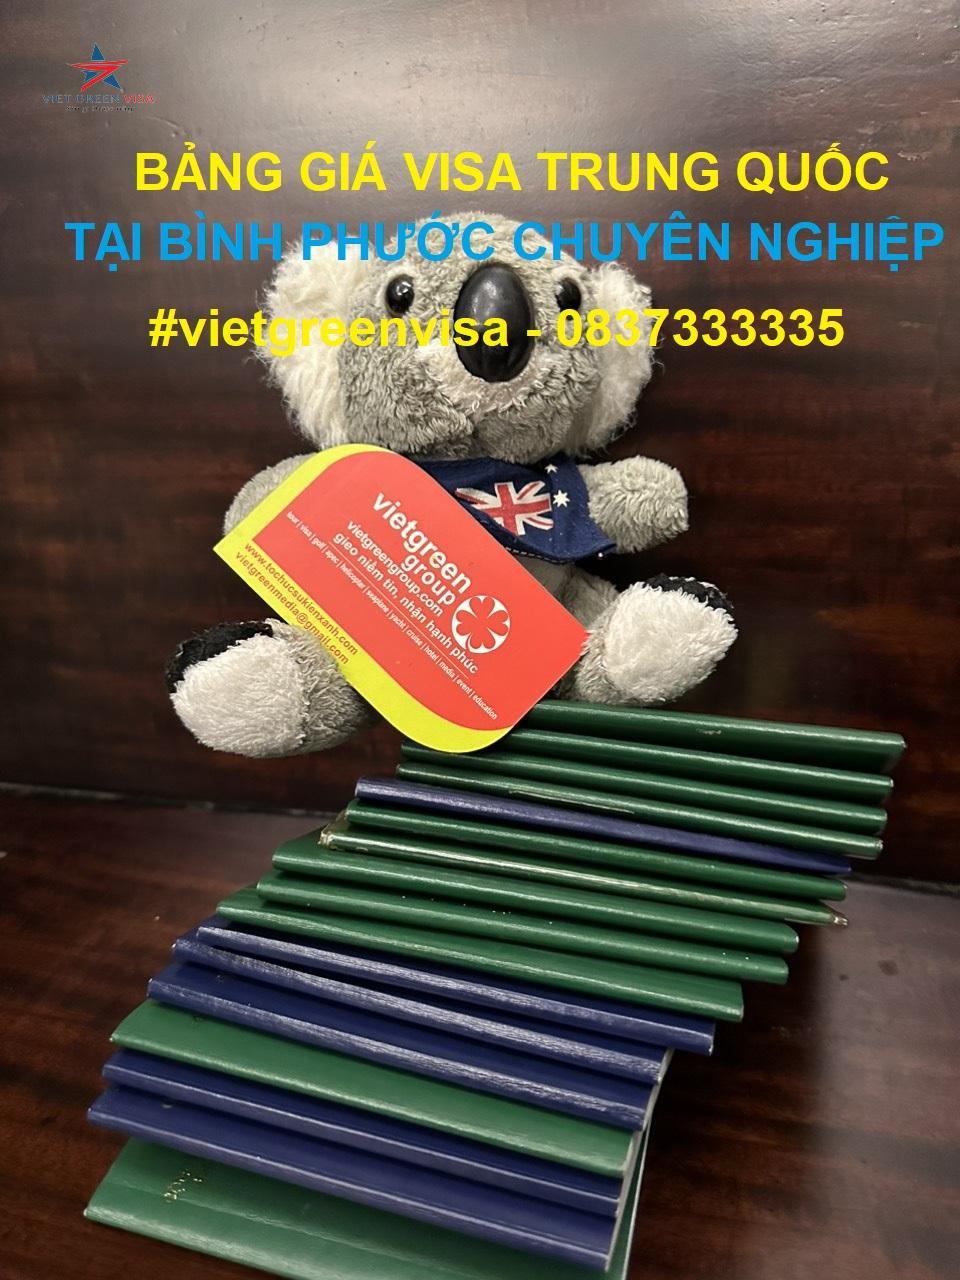 Dịch vụ xin visa Trung Quốc tại Bình Phước chuyên nghiệp